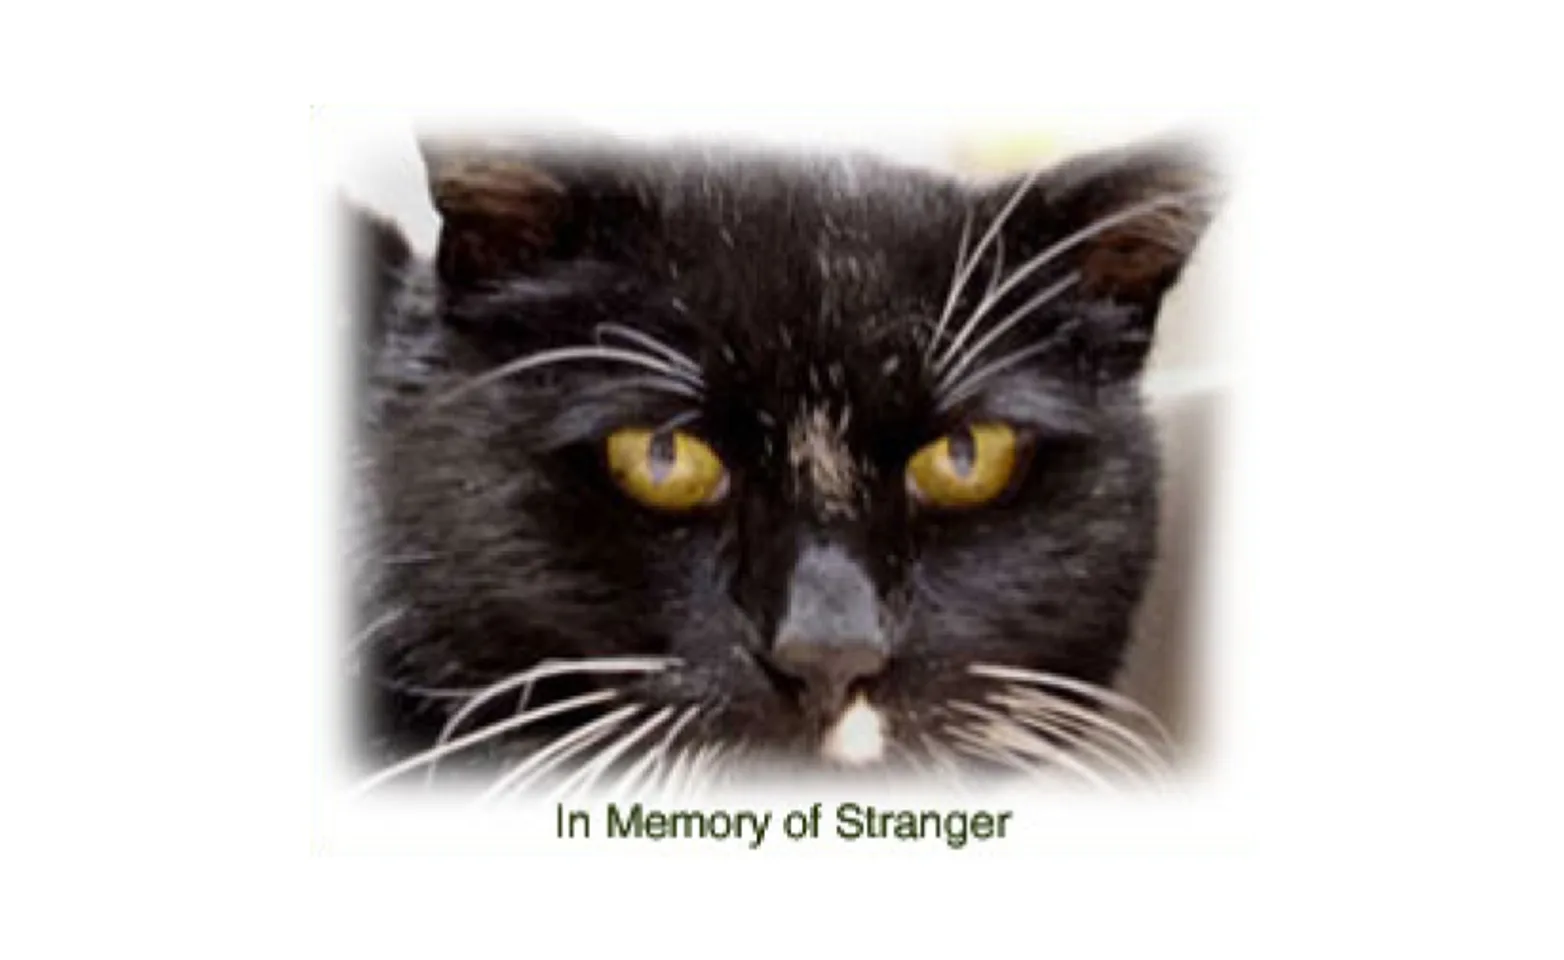 A cat named Stranger